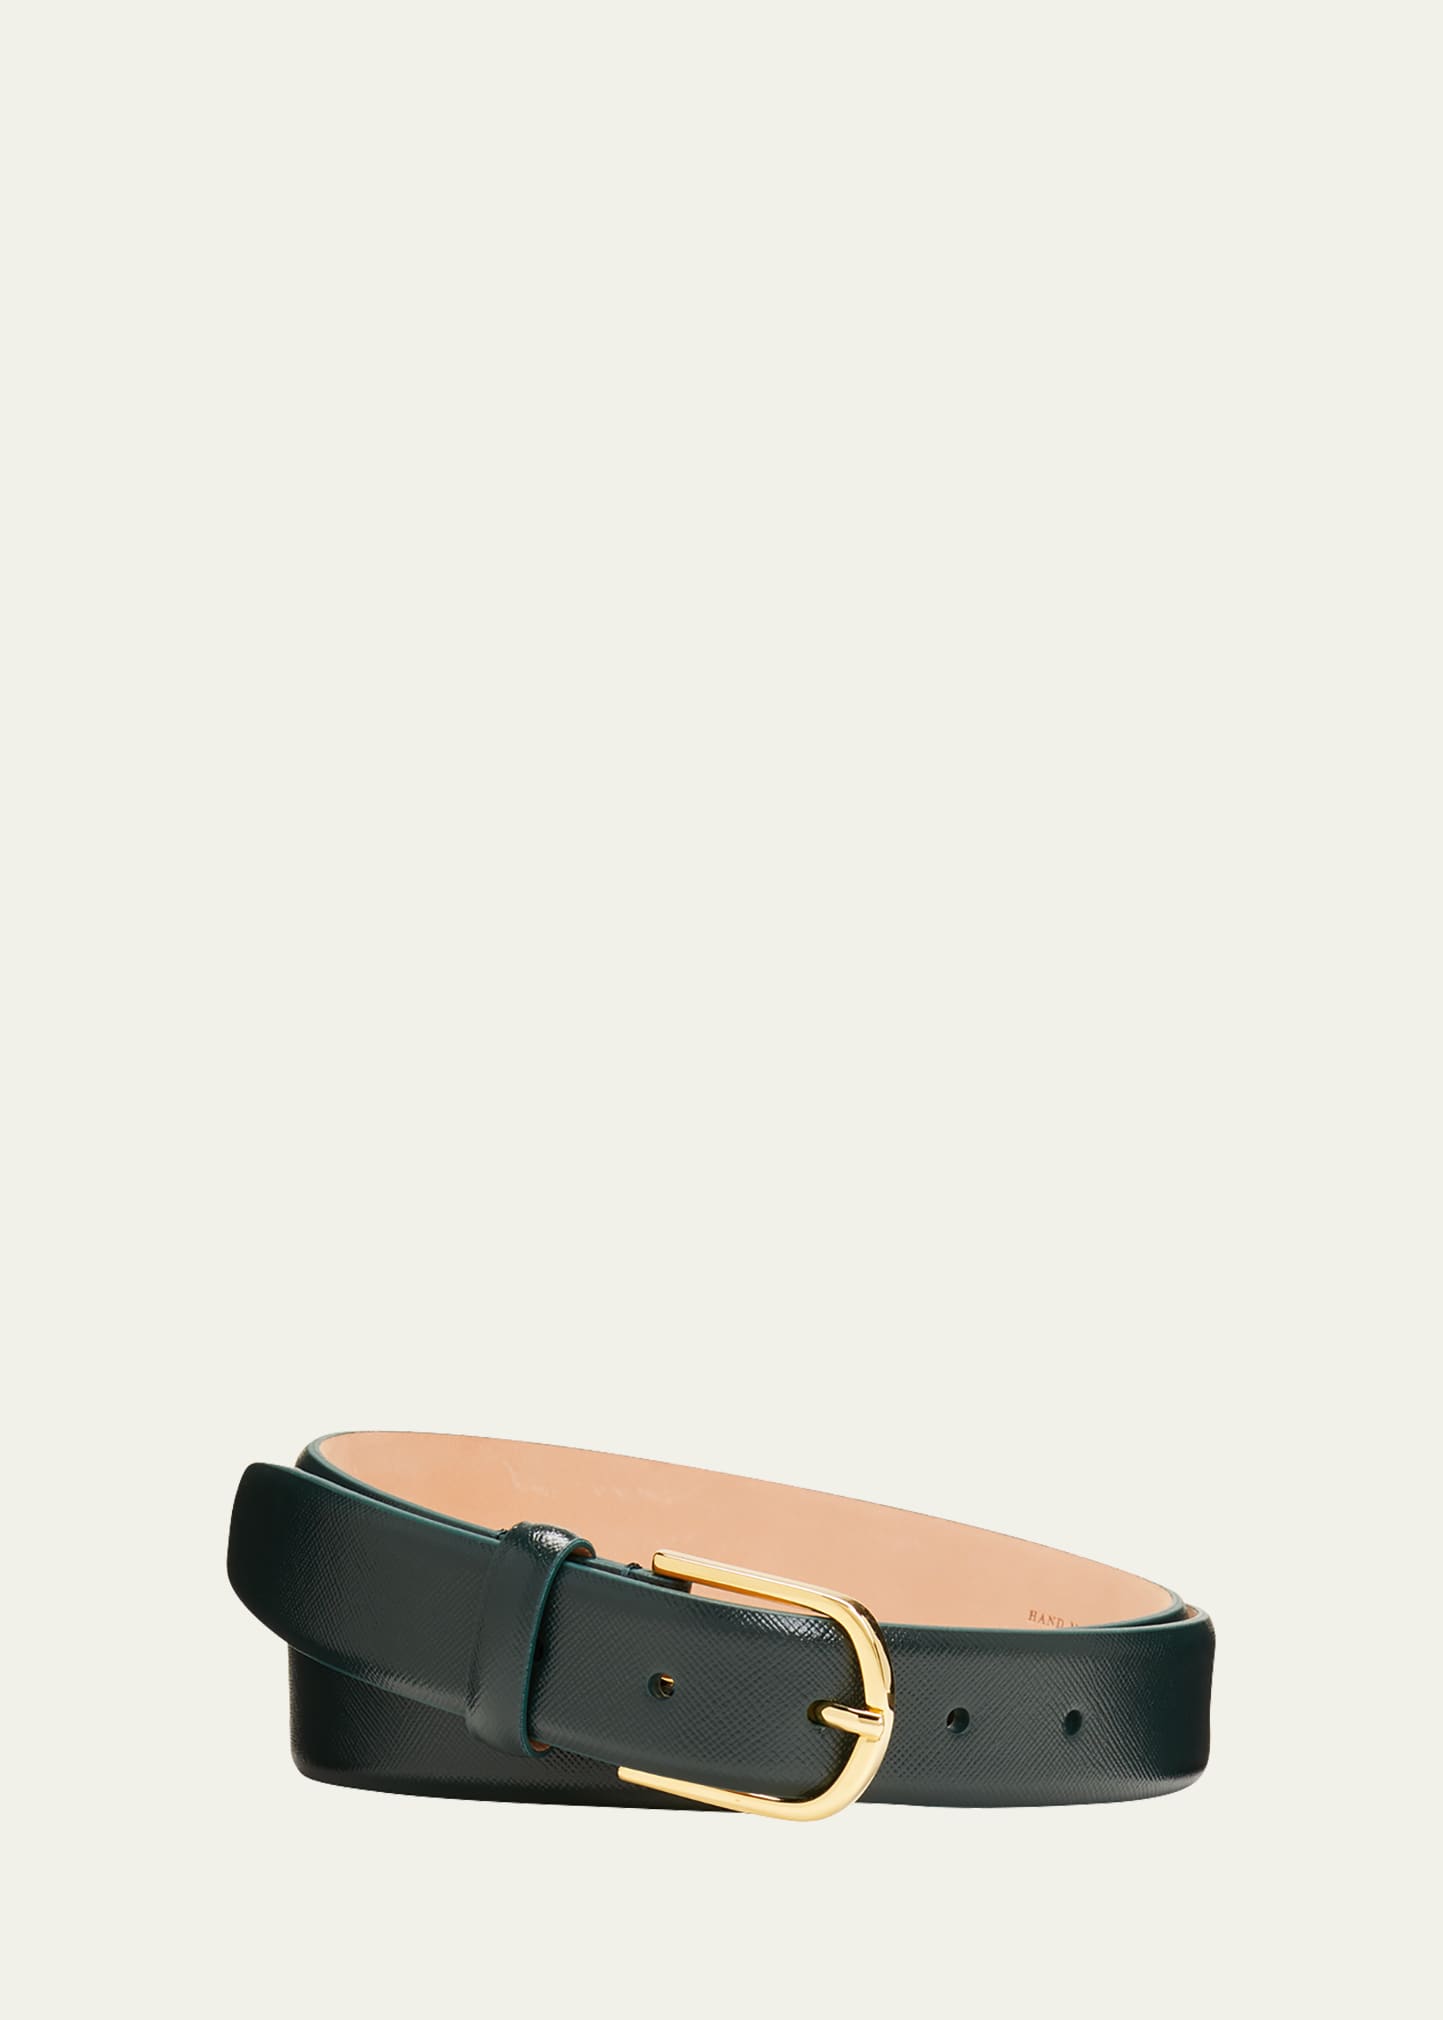 Simonnot Godard Men's Saffiano Leather Belt, 30mm In Bottle Green C 18